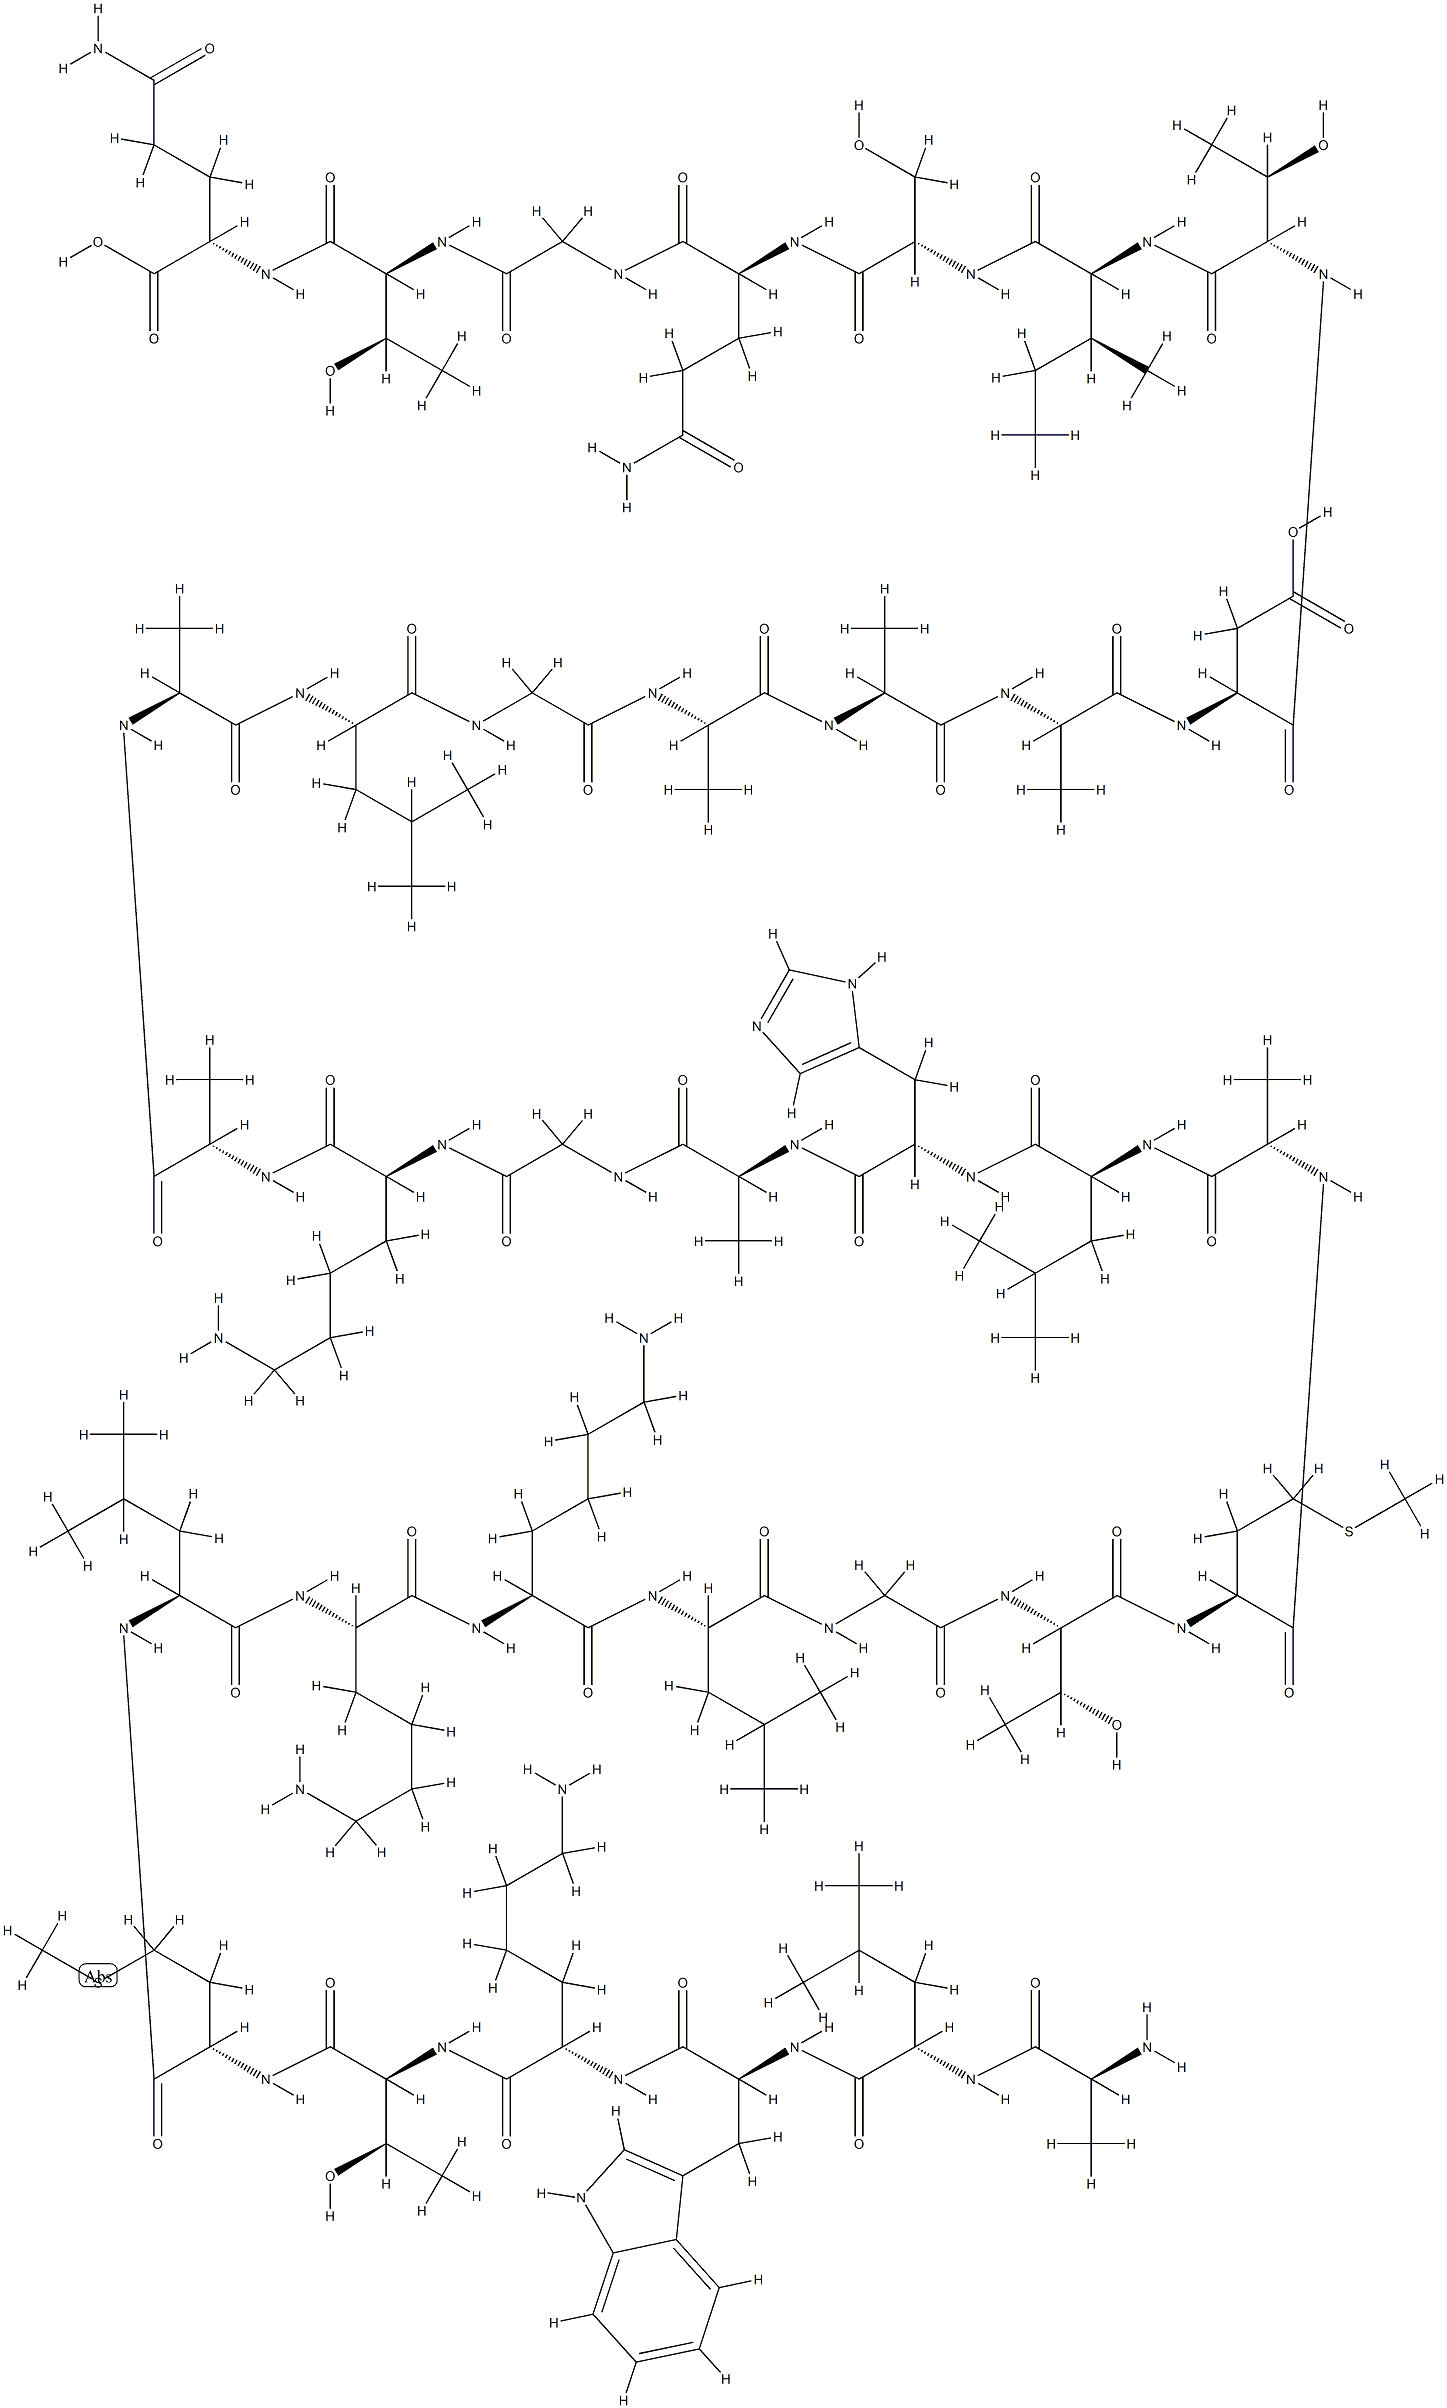 L-Glutamine, L-alanyl-L-leucyl-L-tryptophyl-L-lysyl-L-threonyl-L-methionyl-L-leucyl-L-lysyl-L-lysyl-L-leucylglycyl-L-threonyl-L-methionyl-L-alanyl-L-leucyl-L-histidyl-L-alanylglycyl-L-lysyl-L-alanyl-L-alanyl-L-leucylglycyl-L-alanyl-L-alanyl-L-alanyl-L-α-aspartyl-L-threonyl-L-isoleucyl-L-seryl-L-glut...